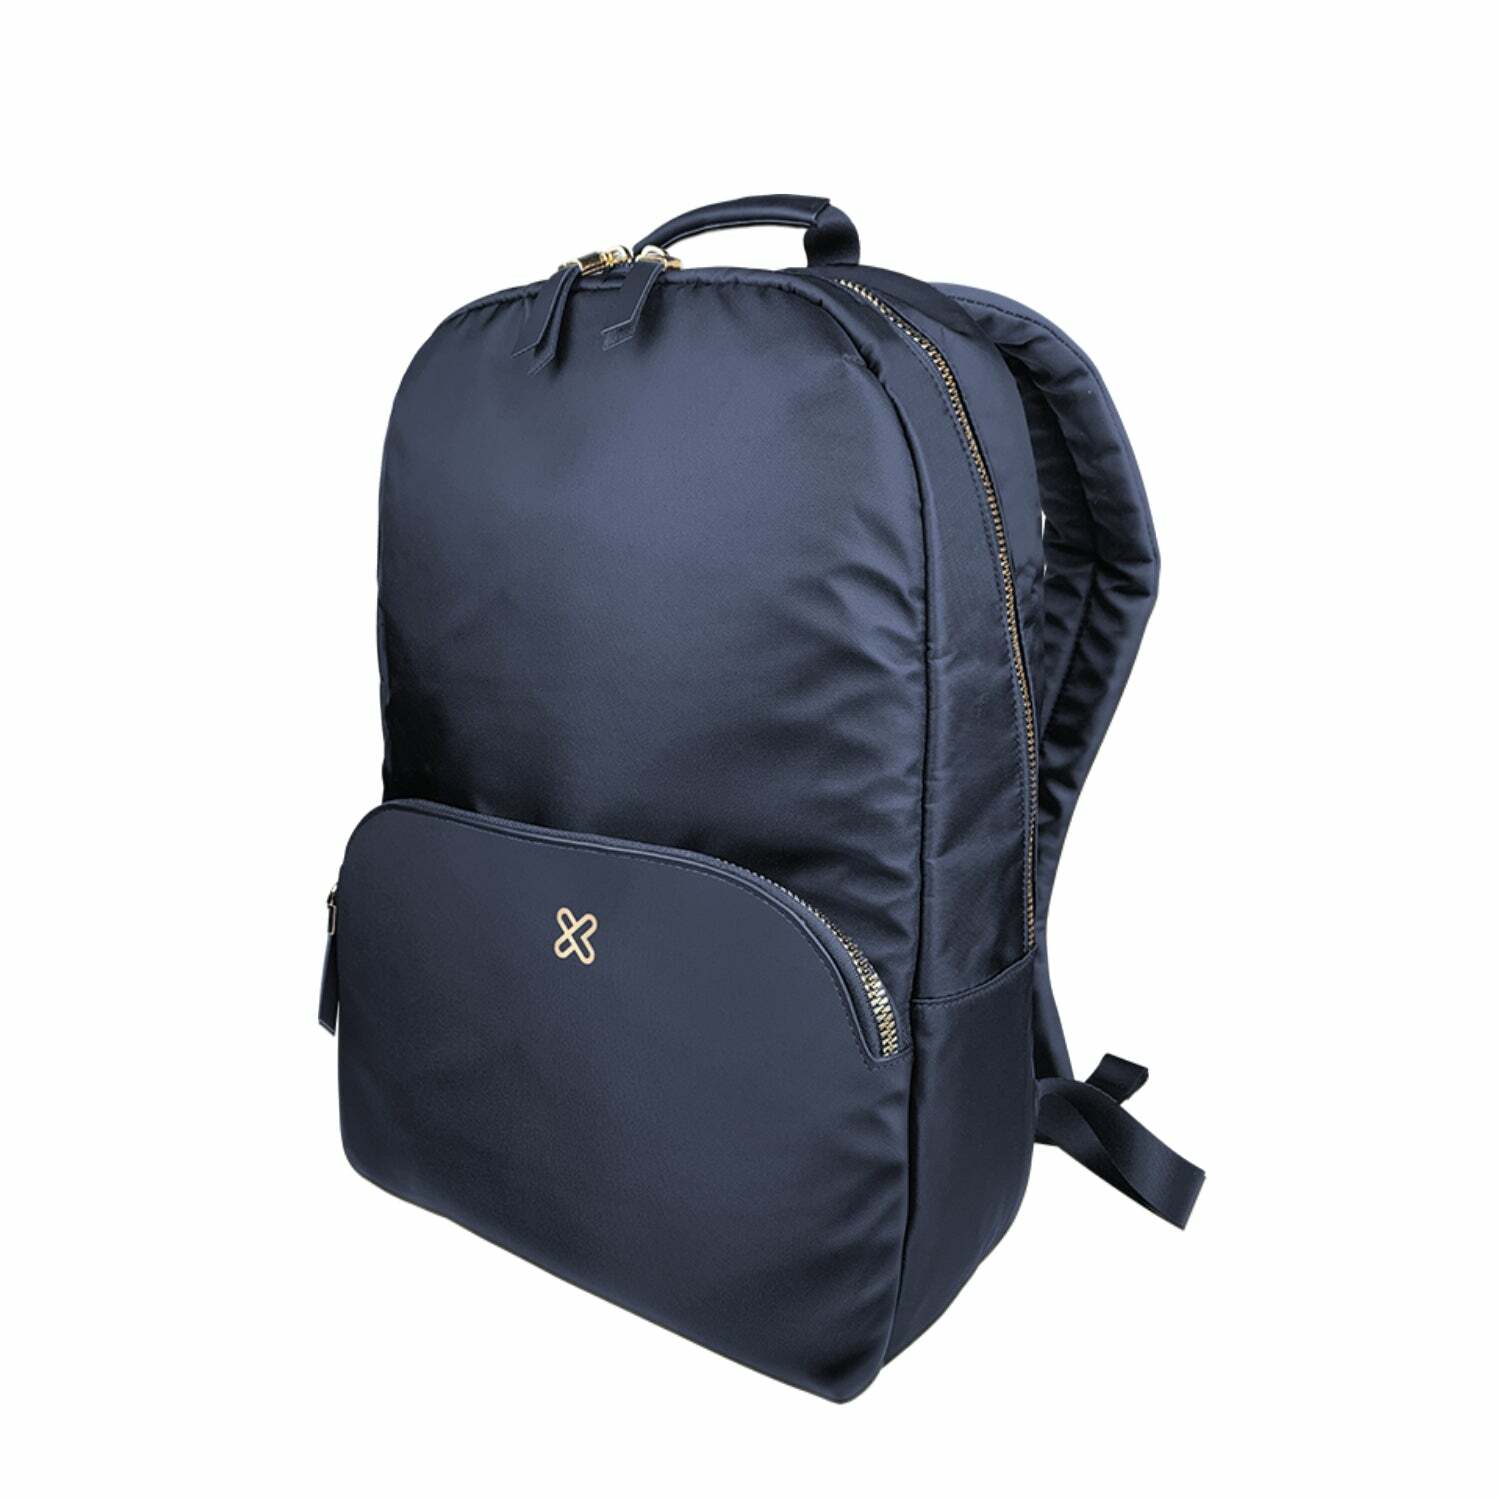 Klip Xtreme - Aberdeen KNB-456 Laptop Backpack, Blue